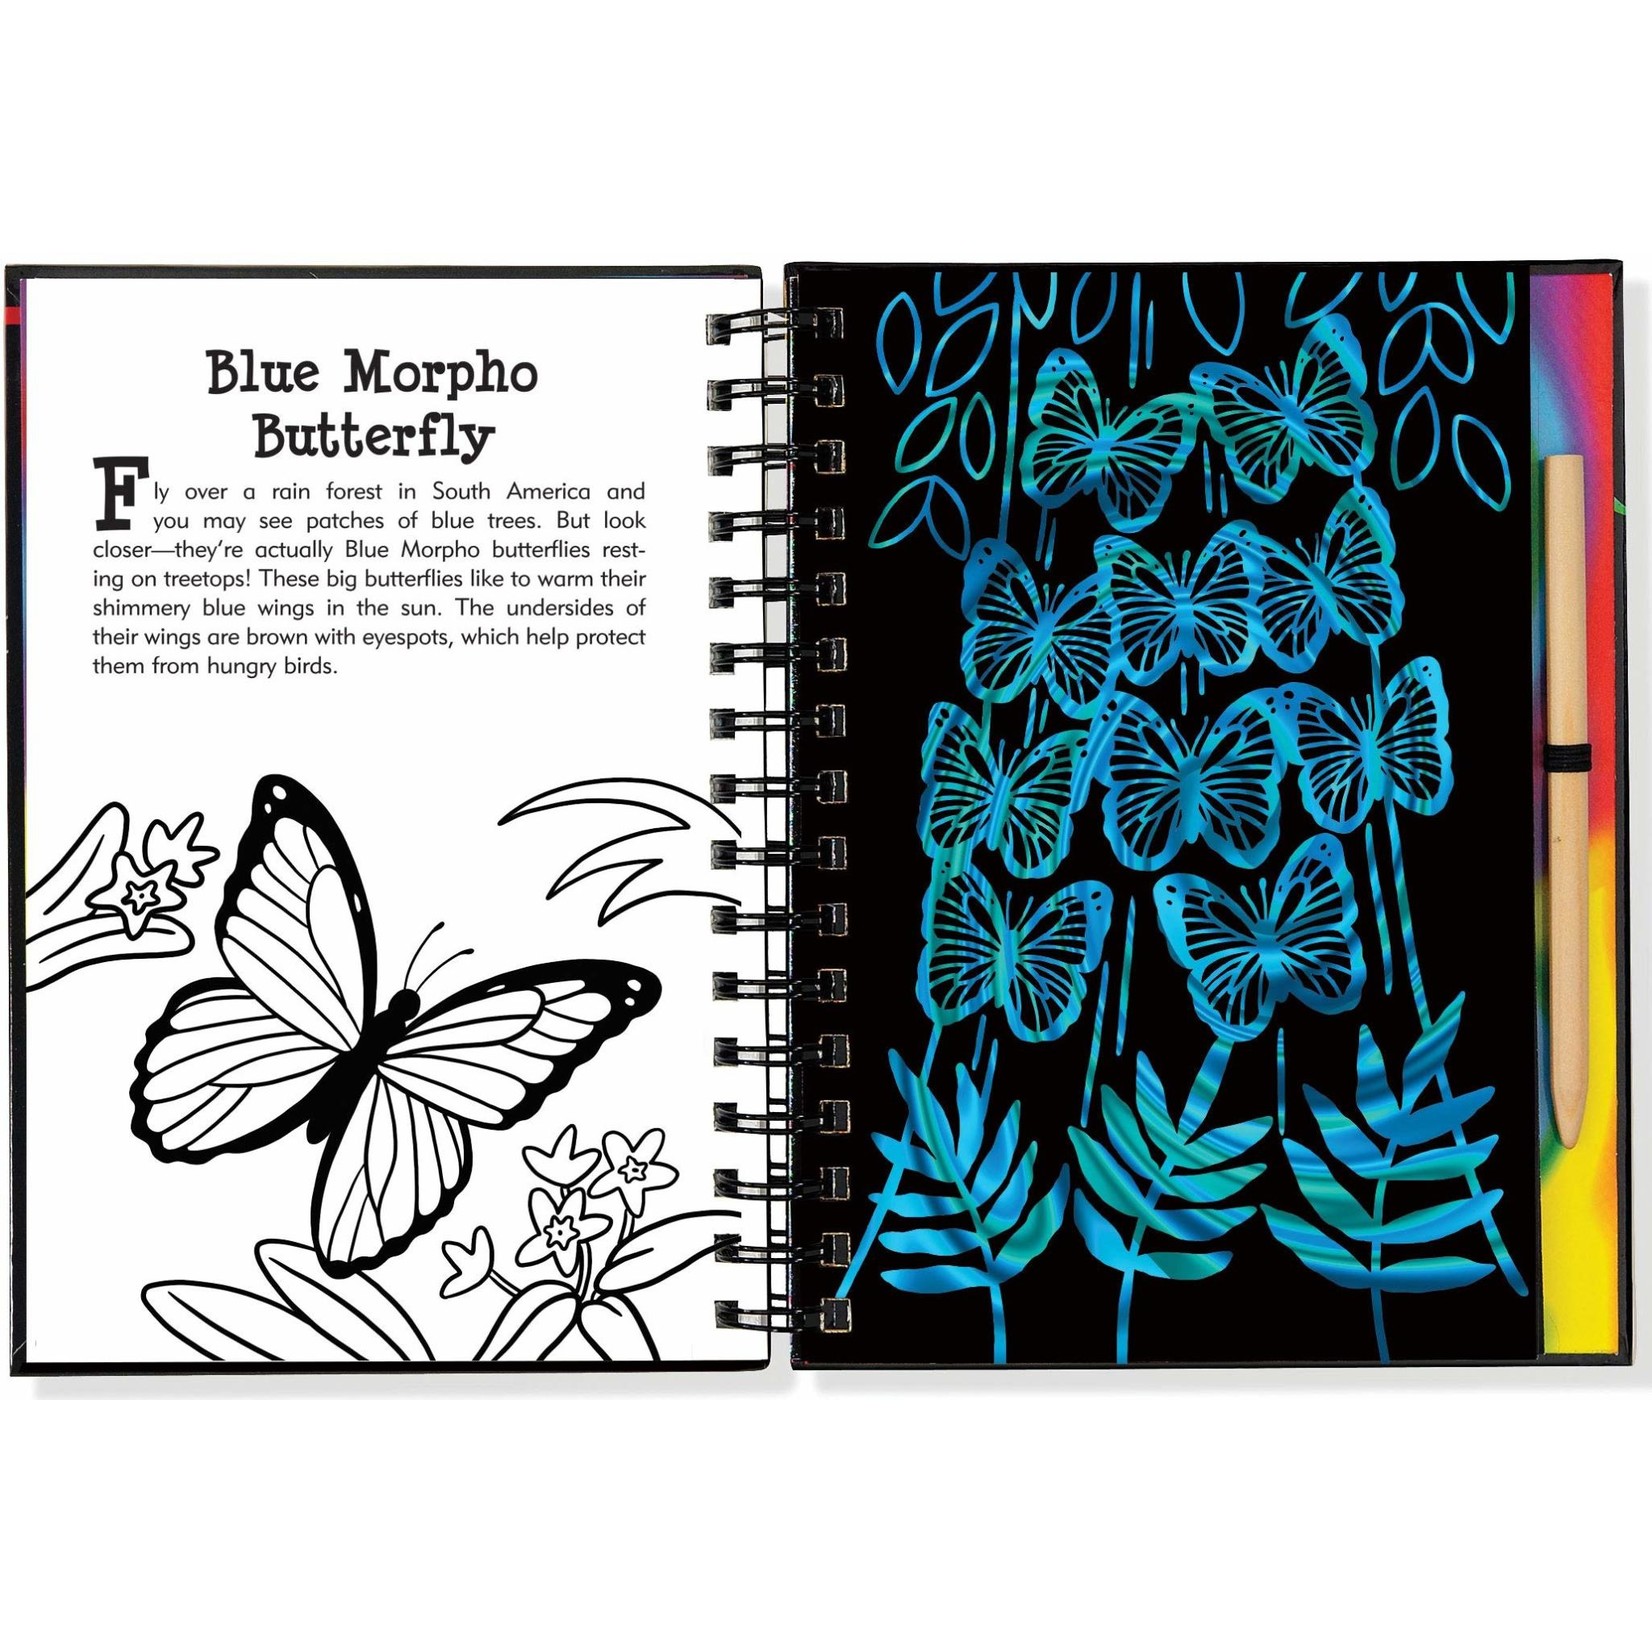 Peter Pauper Press Scratch & Sketch Butterflies & Friends (Trace Along)